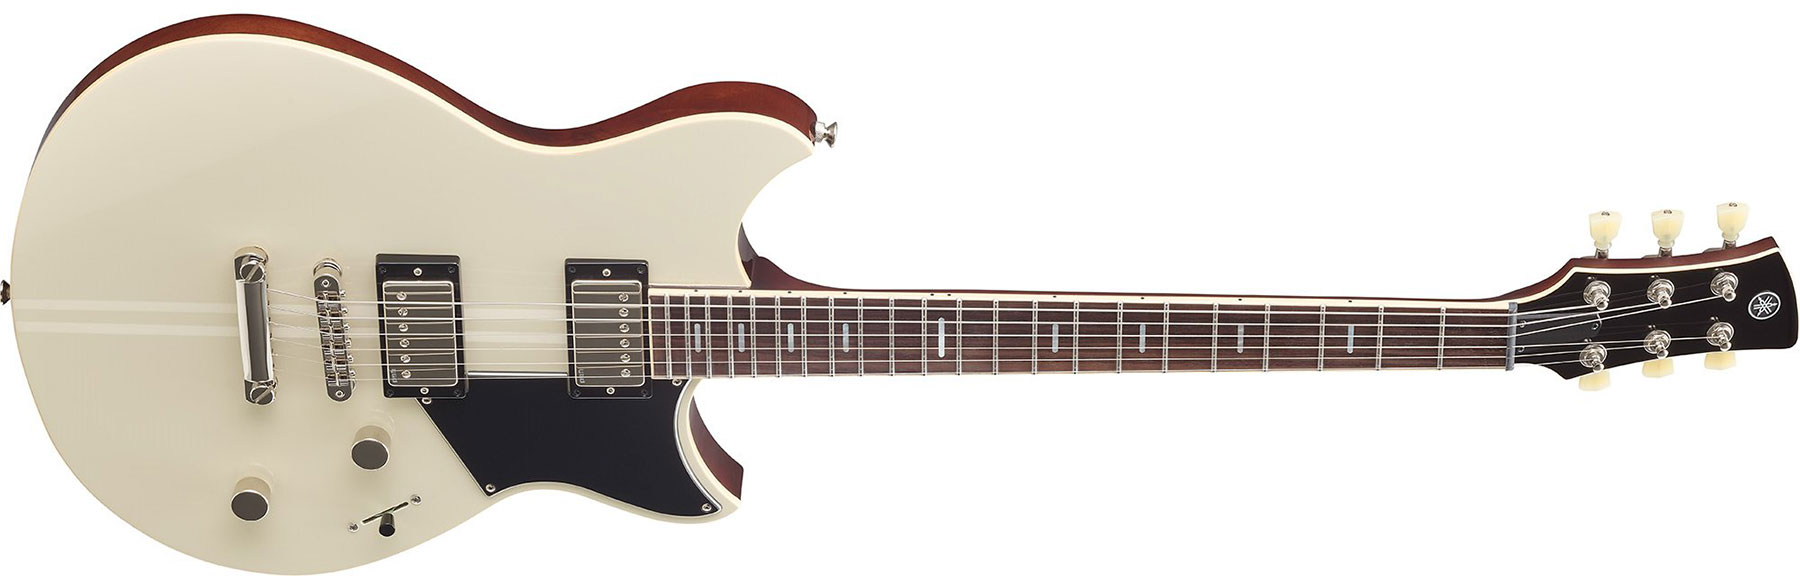 Yamaha Rss20 Revstar Standard Hh Ht Rw - Vintage White - Guitarra eléctrica de doble corte - Variation 1